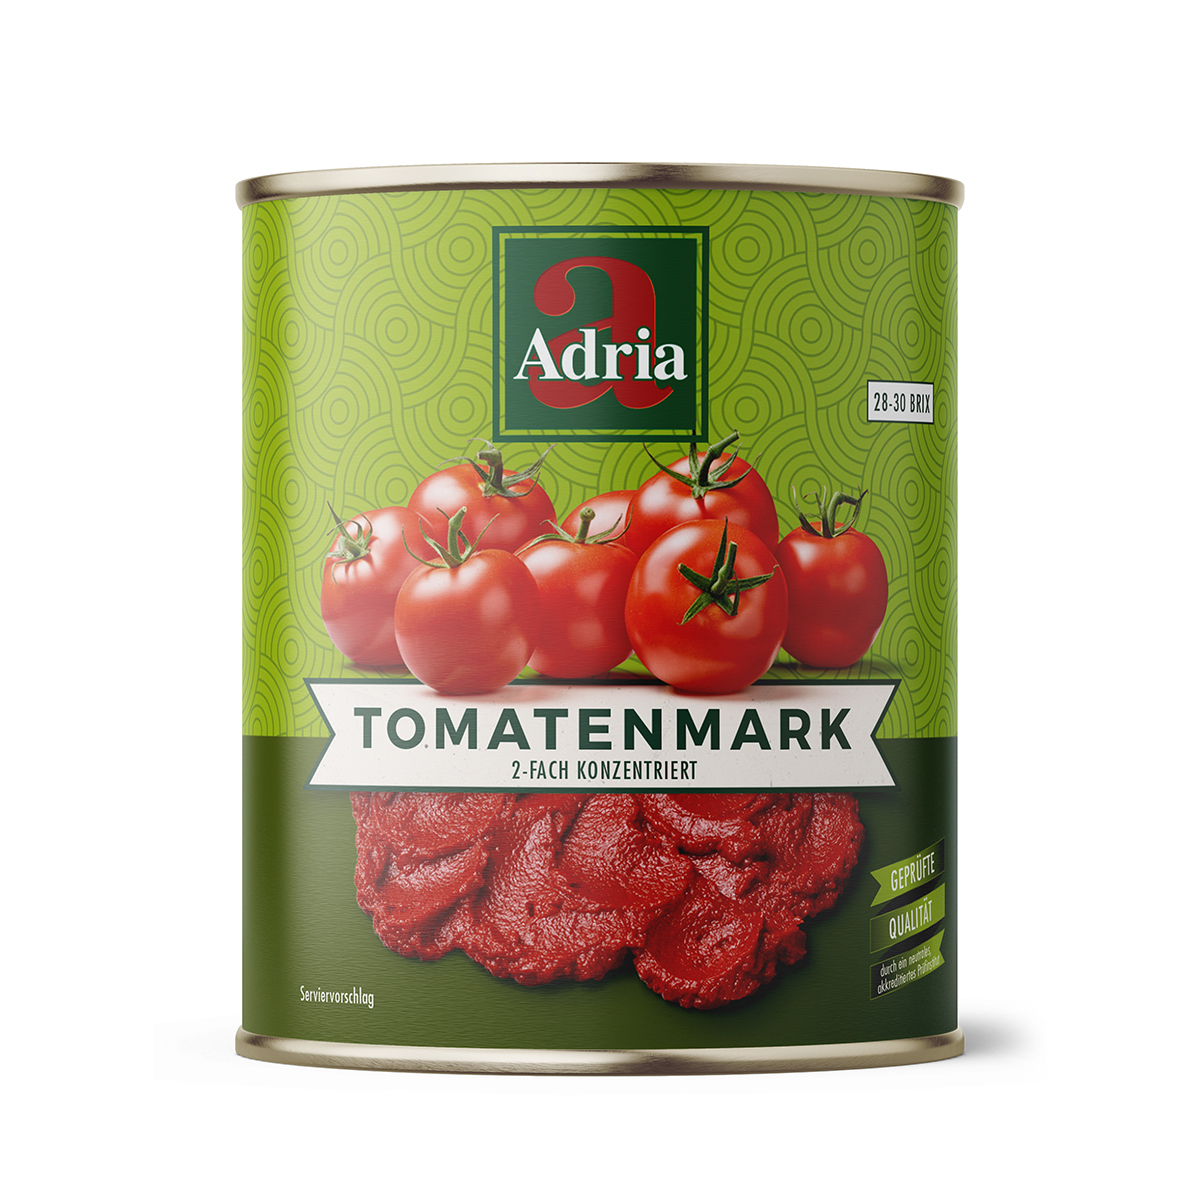 Tomatenmark 2-fach konzentriert 800g